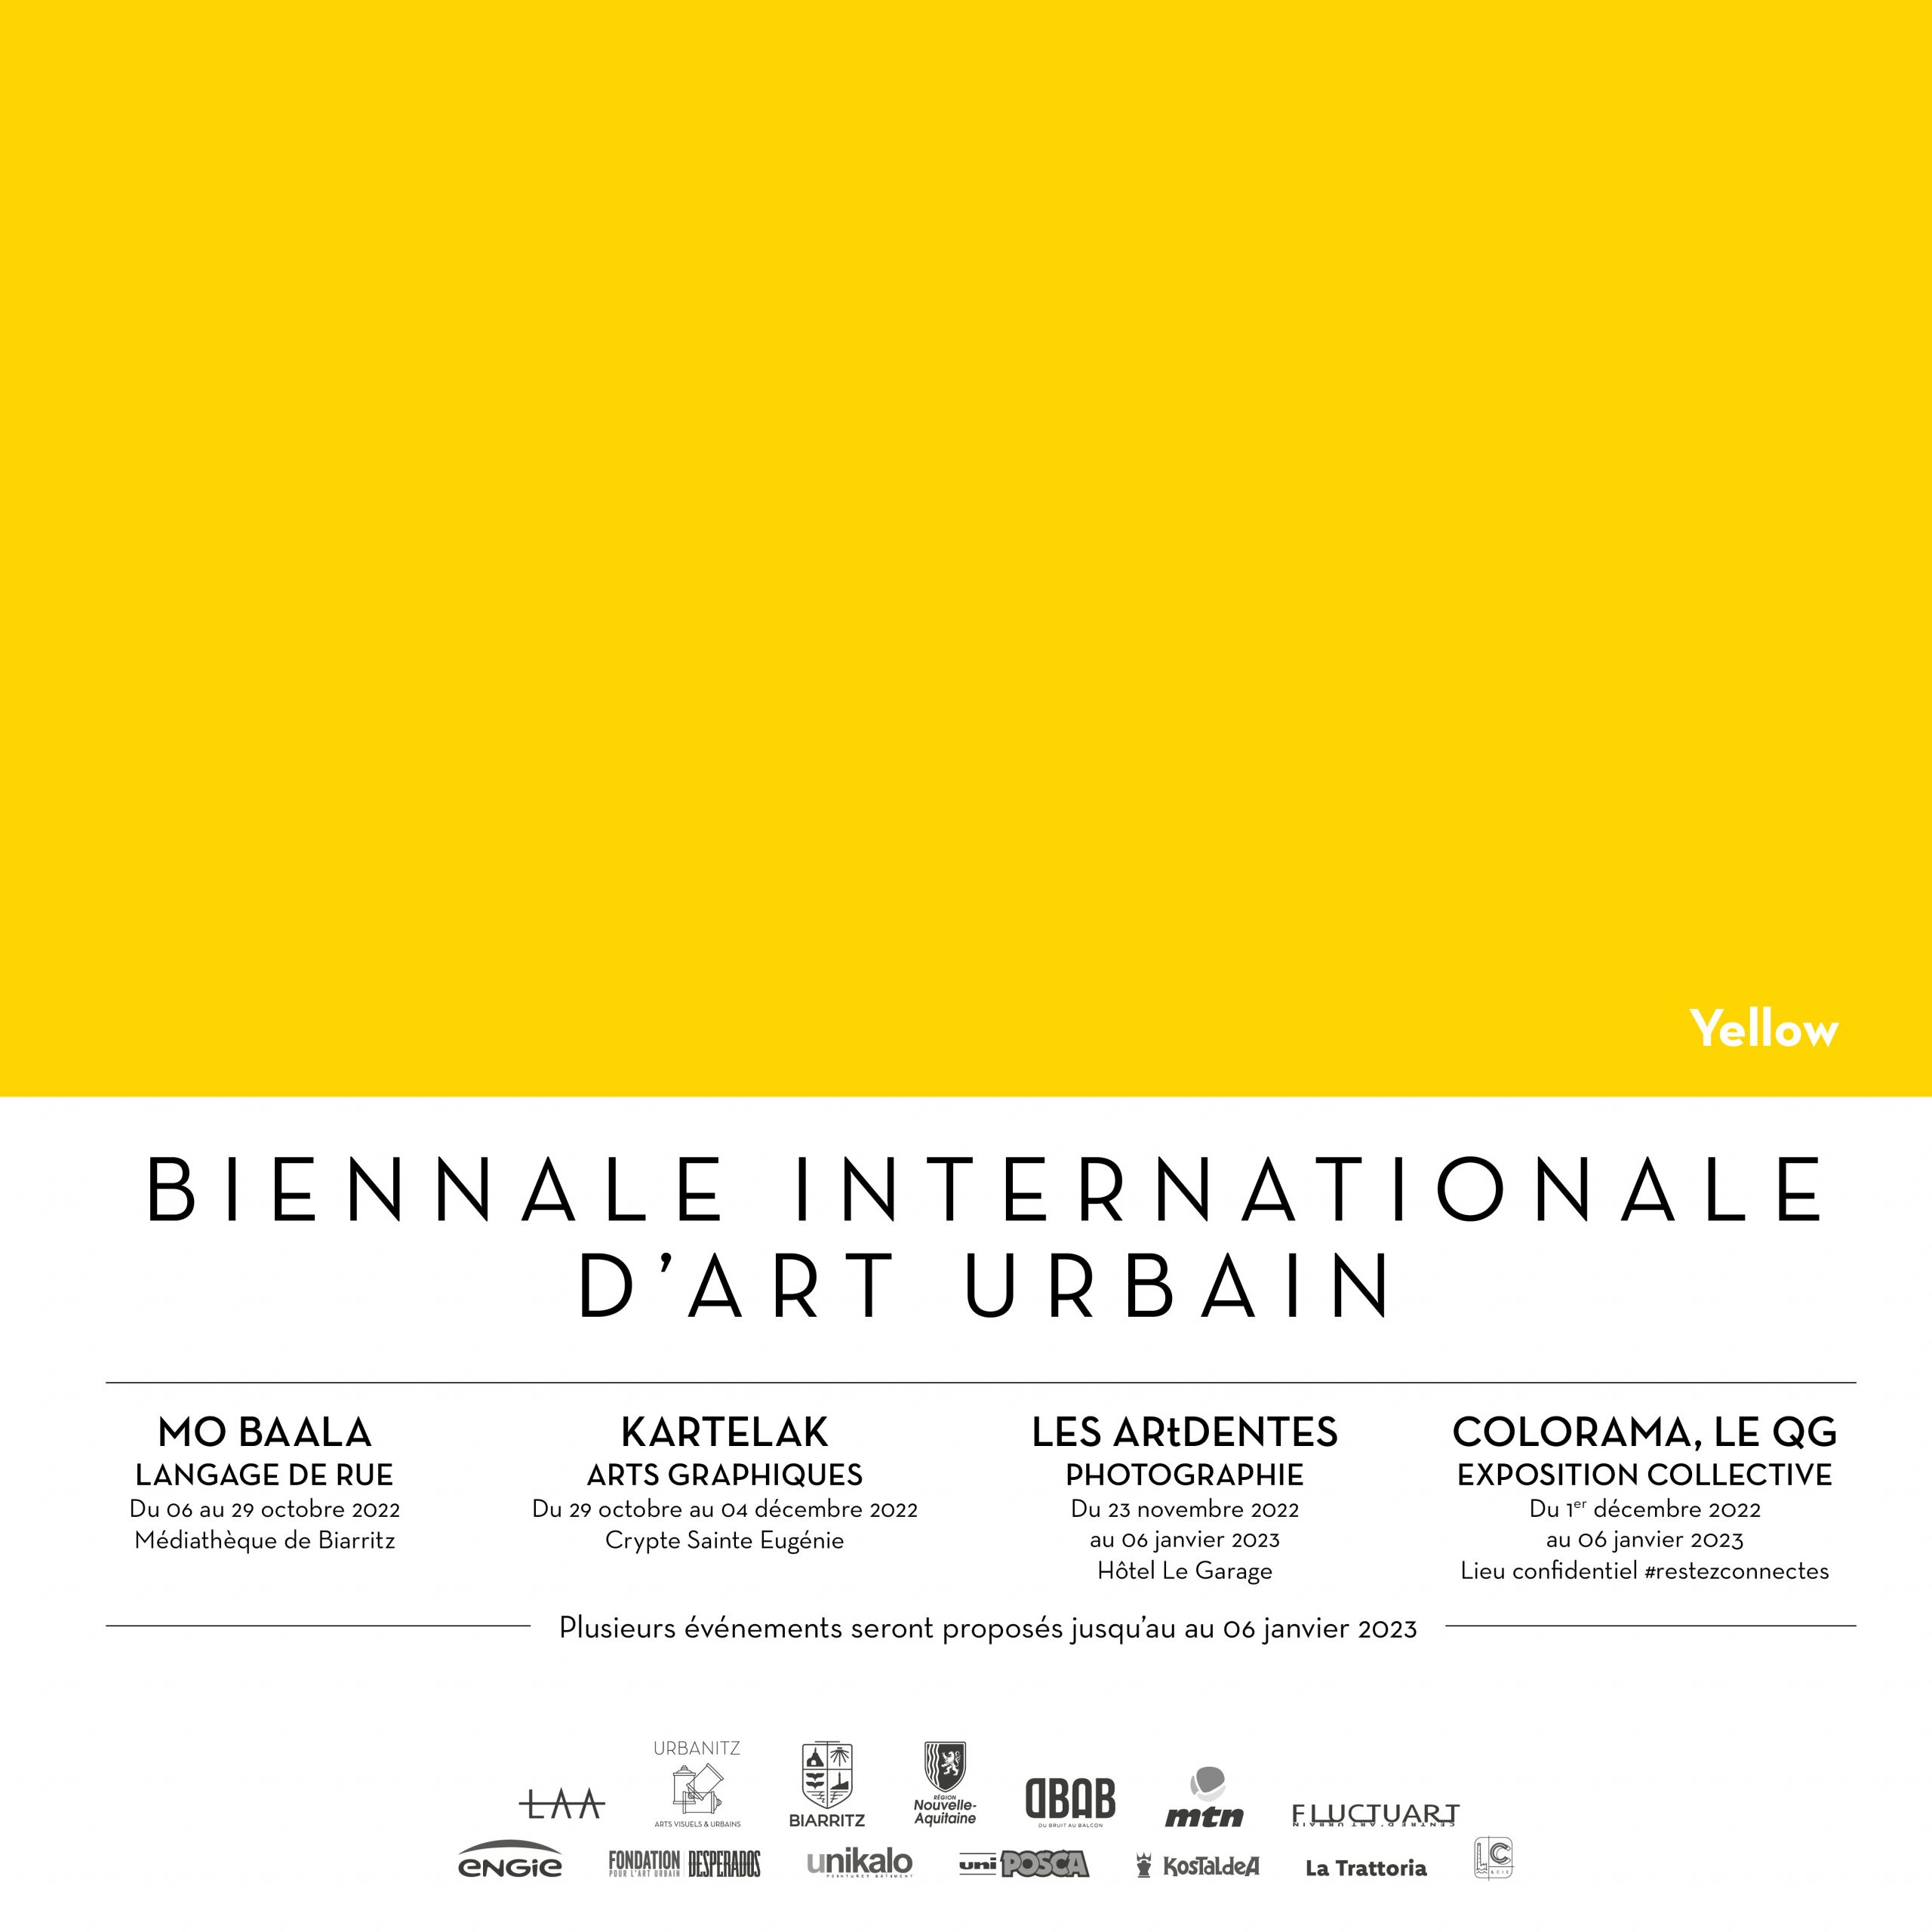 Biennale Internationale d'Art Urbain